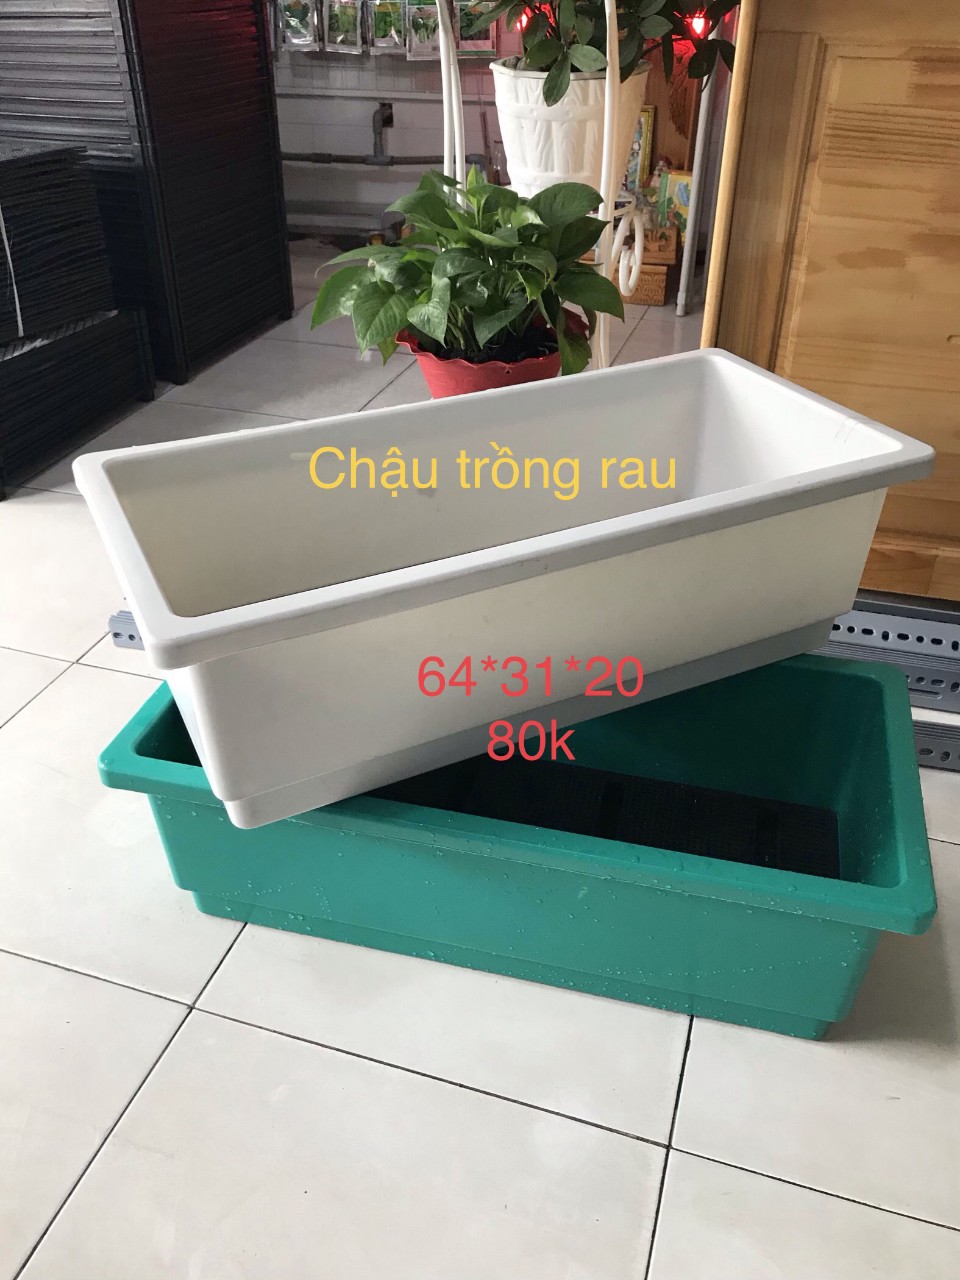 Chậu nhựa trồng cây hình chữ nhật giá rẻ và thông minh tại Quang Anh